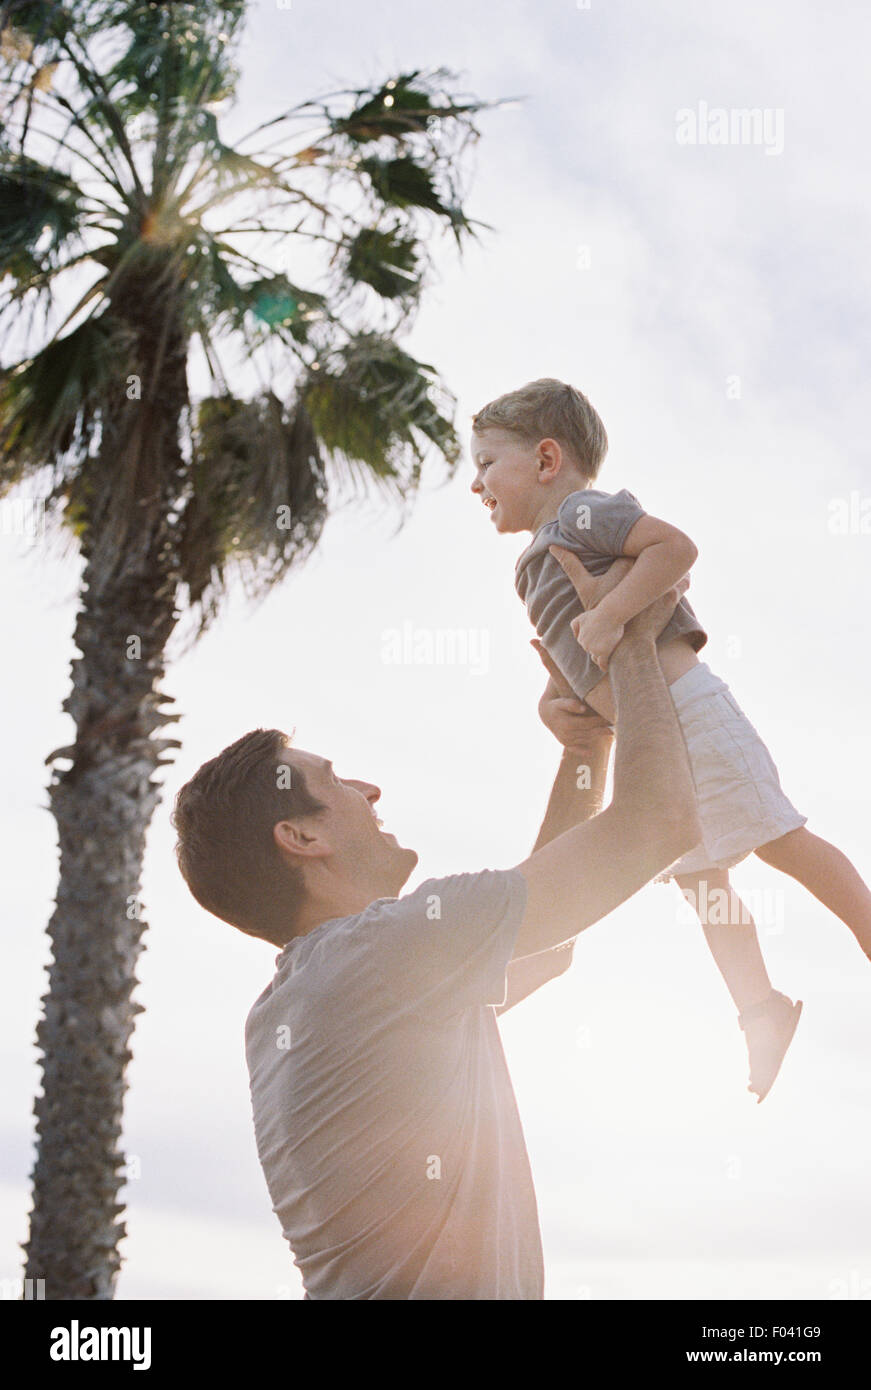 Homme debout par un palmier, jouant avec son jeune fils, le soulevant en l'air. Banque D'Images